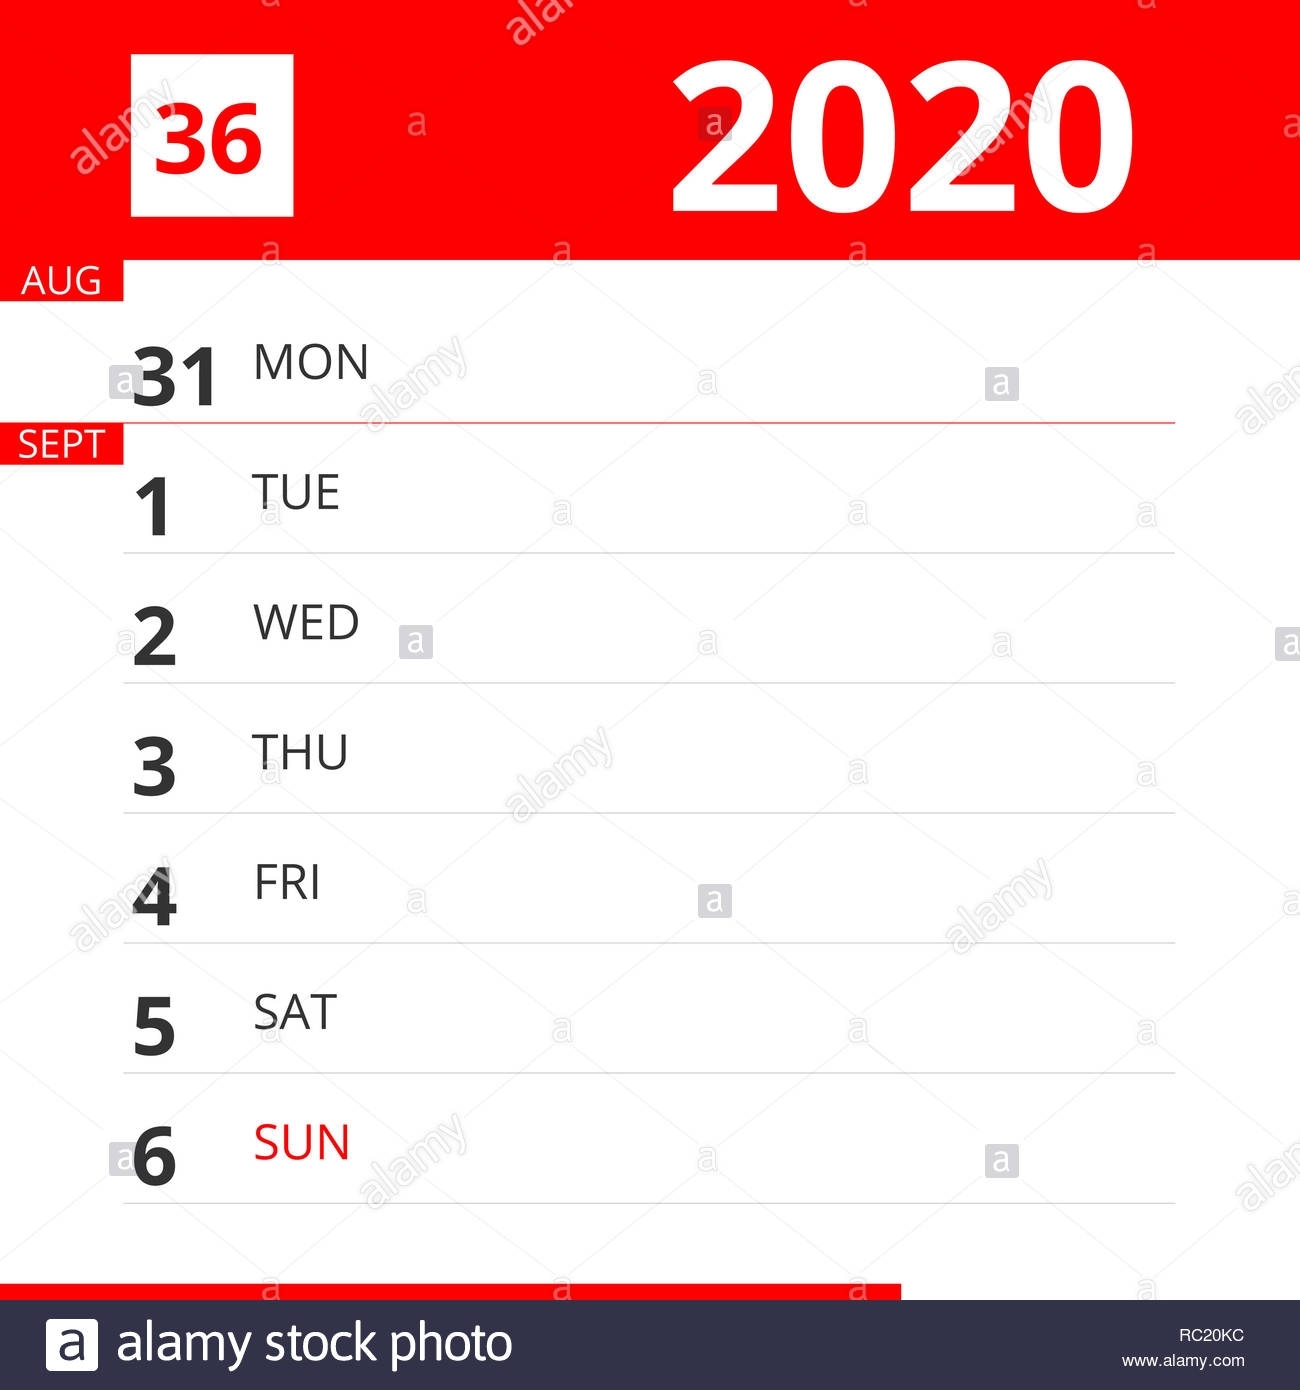 Calendar Planner For Week 36 In 2020, Ends September 6, 2020